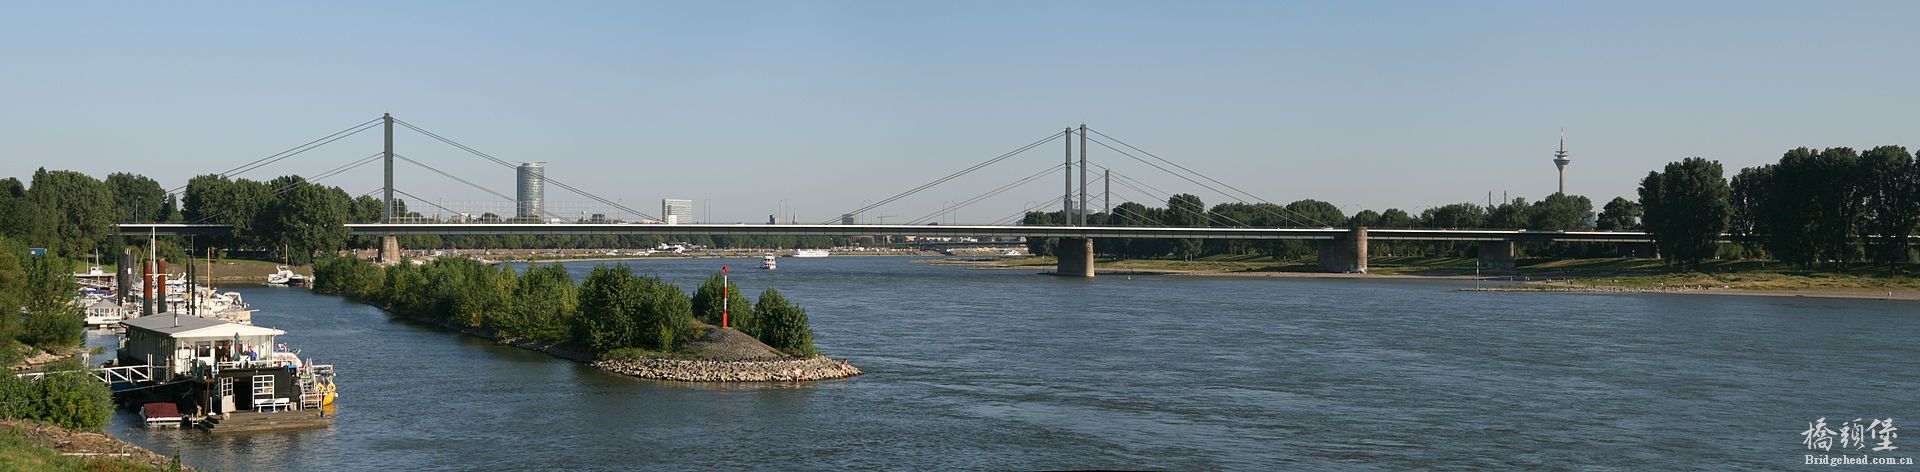 Theodor-Heuss-Brücke.jpg